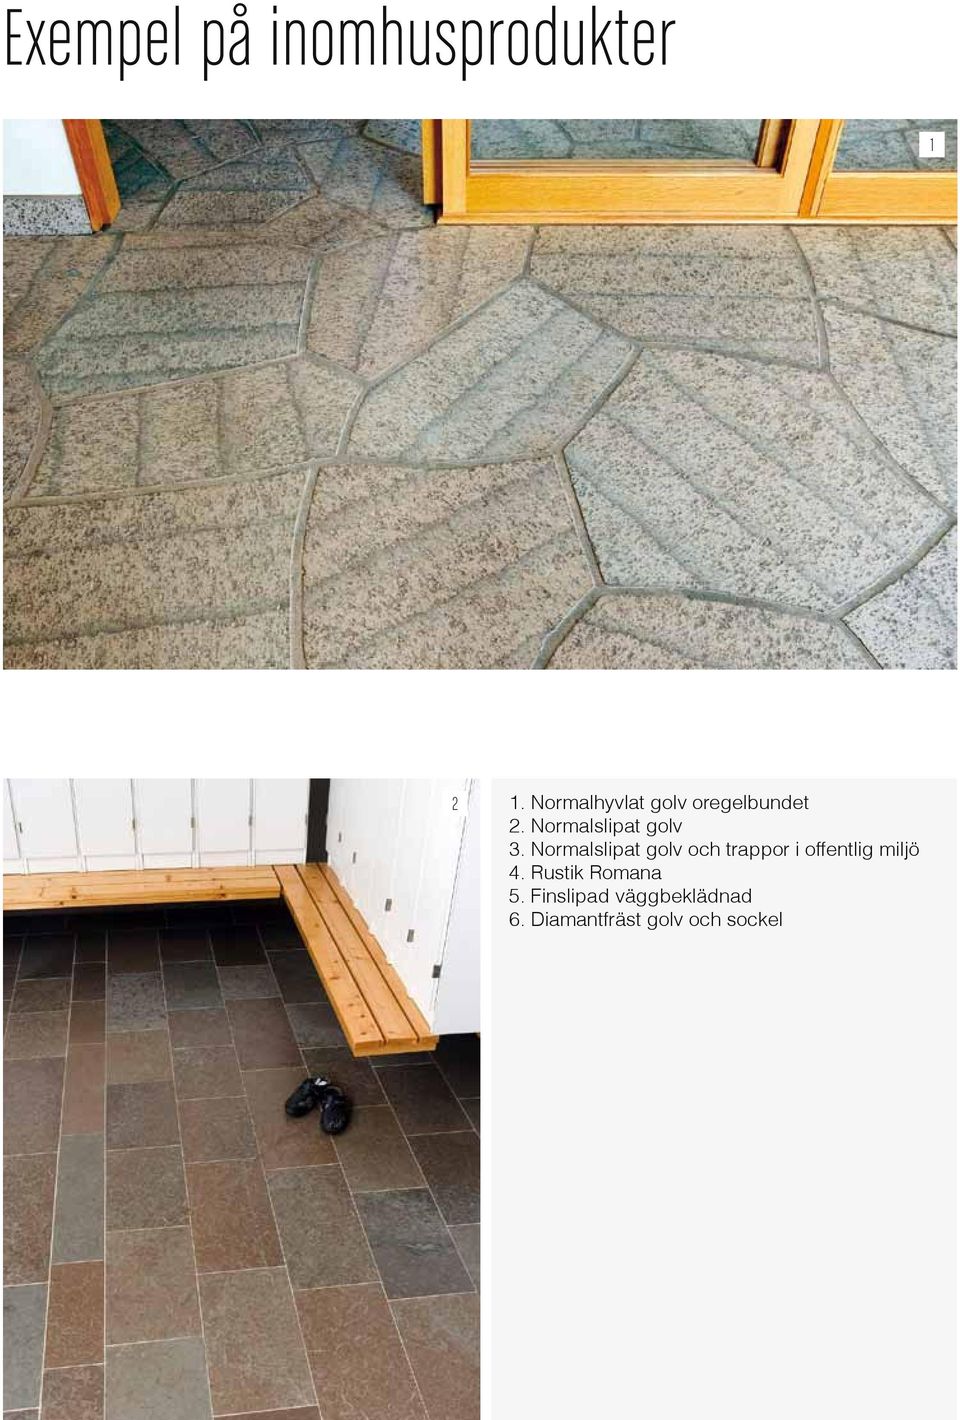 Normalslipat golv och trappor i offentlig miljö 4.